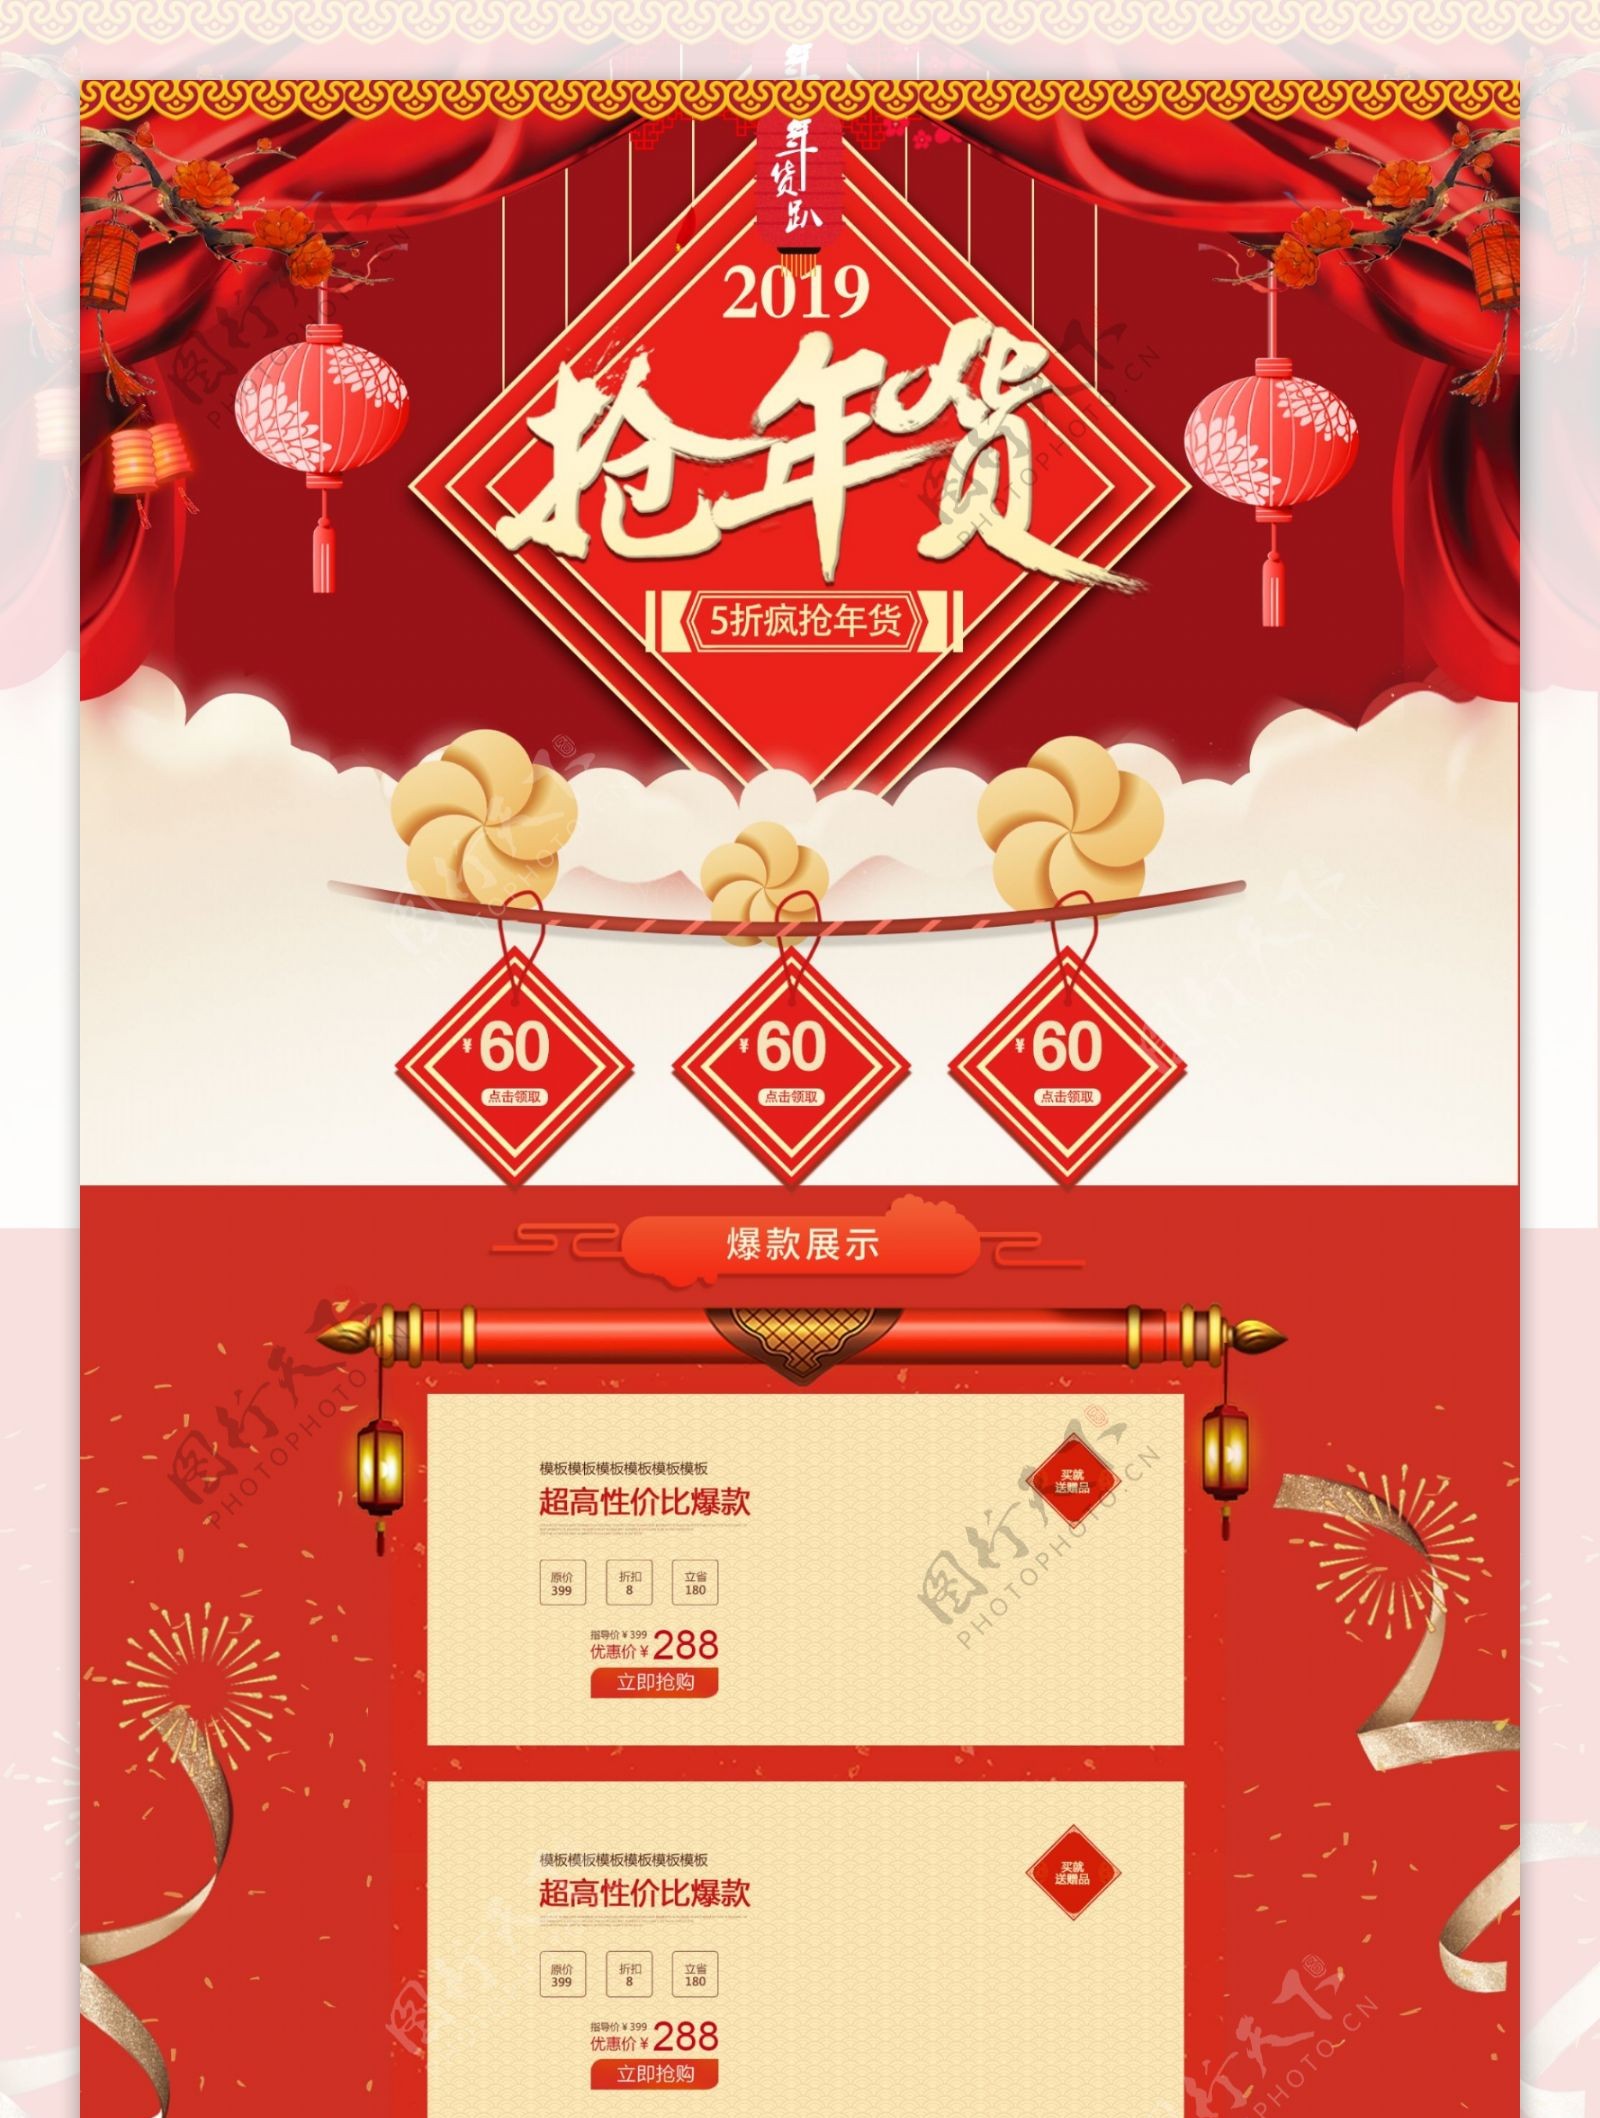 年货节红色喜庆氛围淘宝天猫促销首页模板